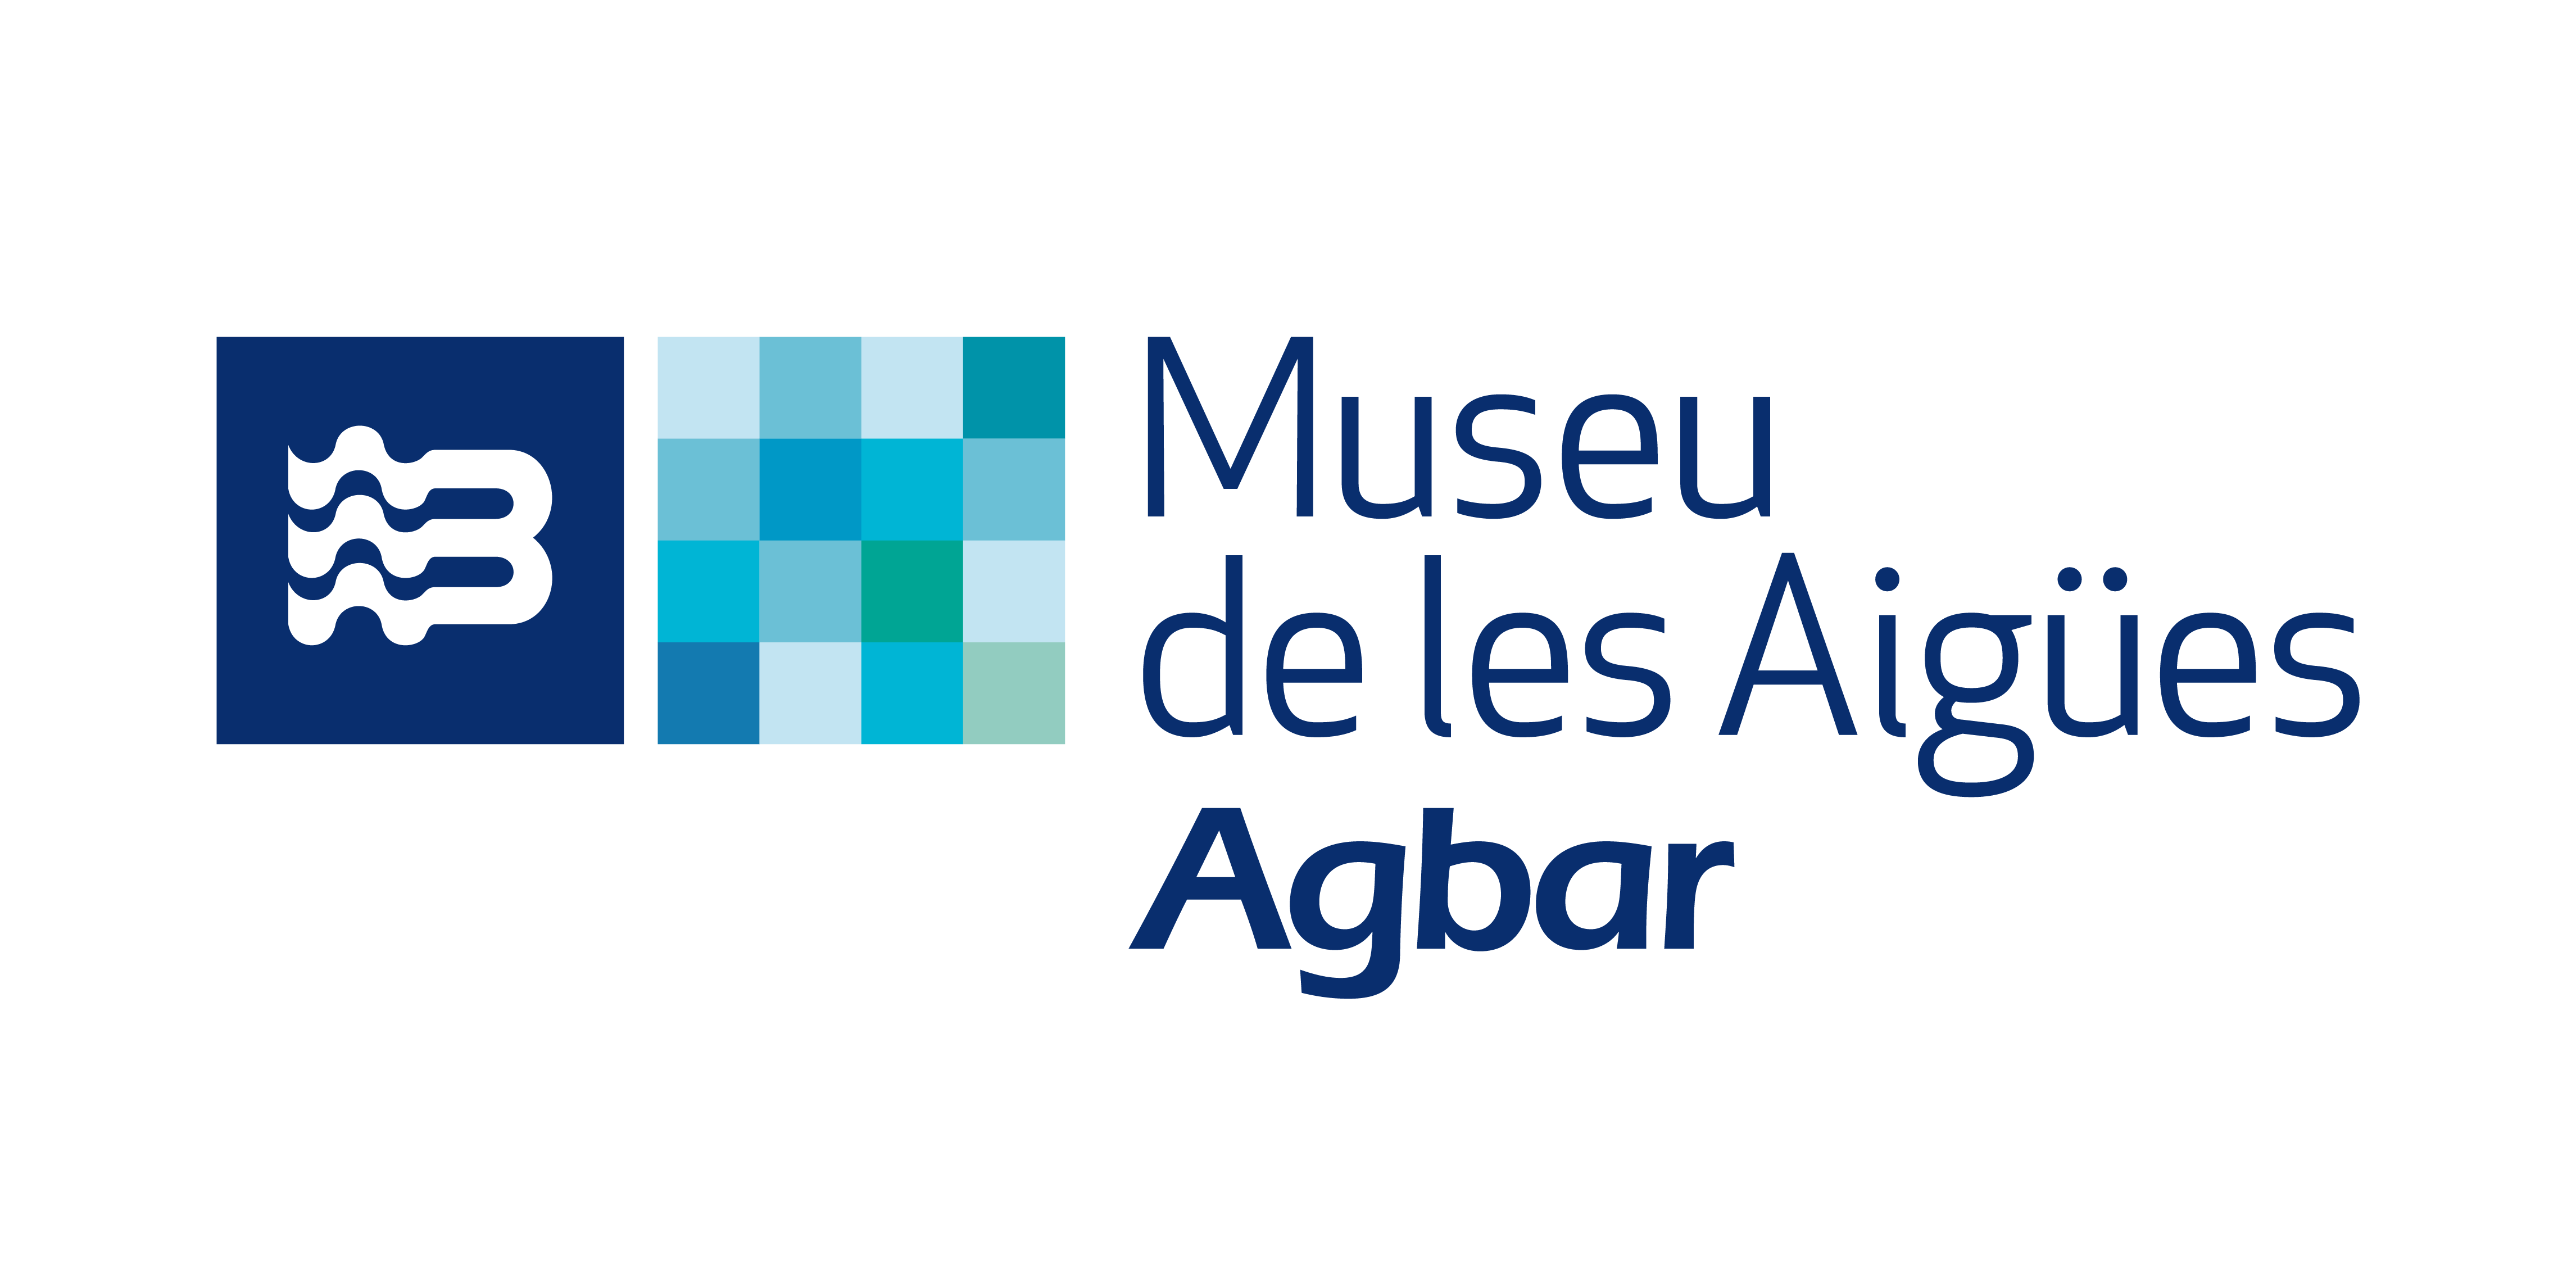 201810112557_Color_AgbarMuseu_Logo2018.png